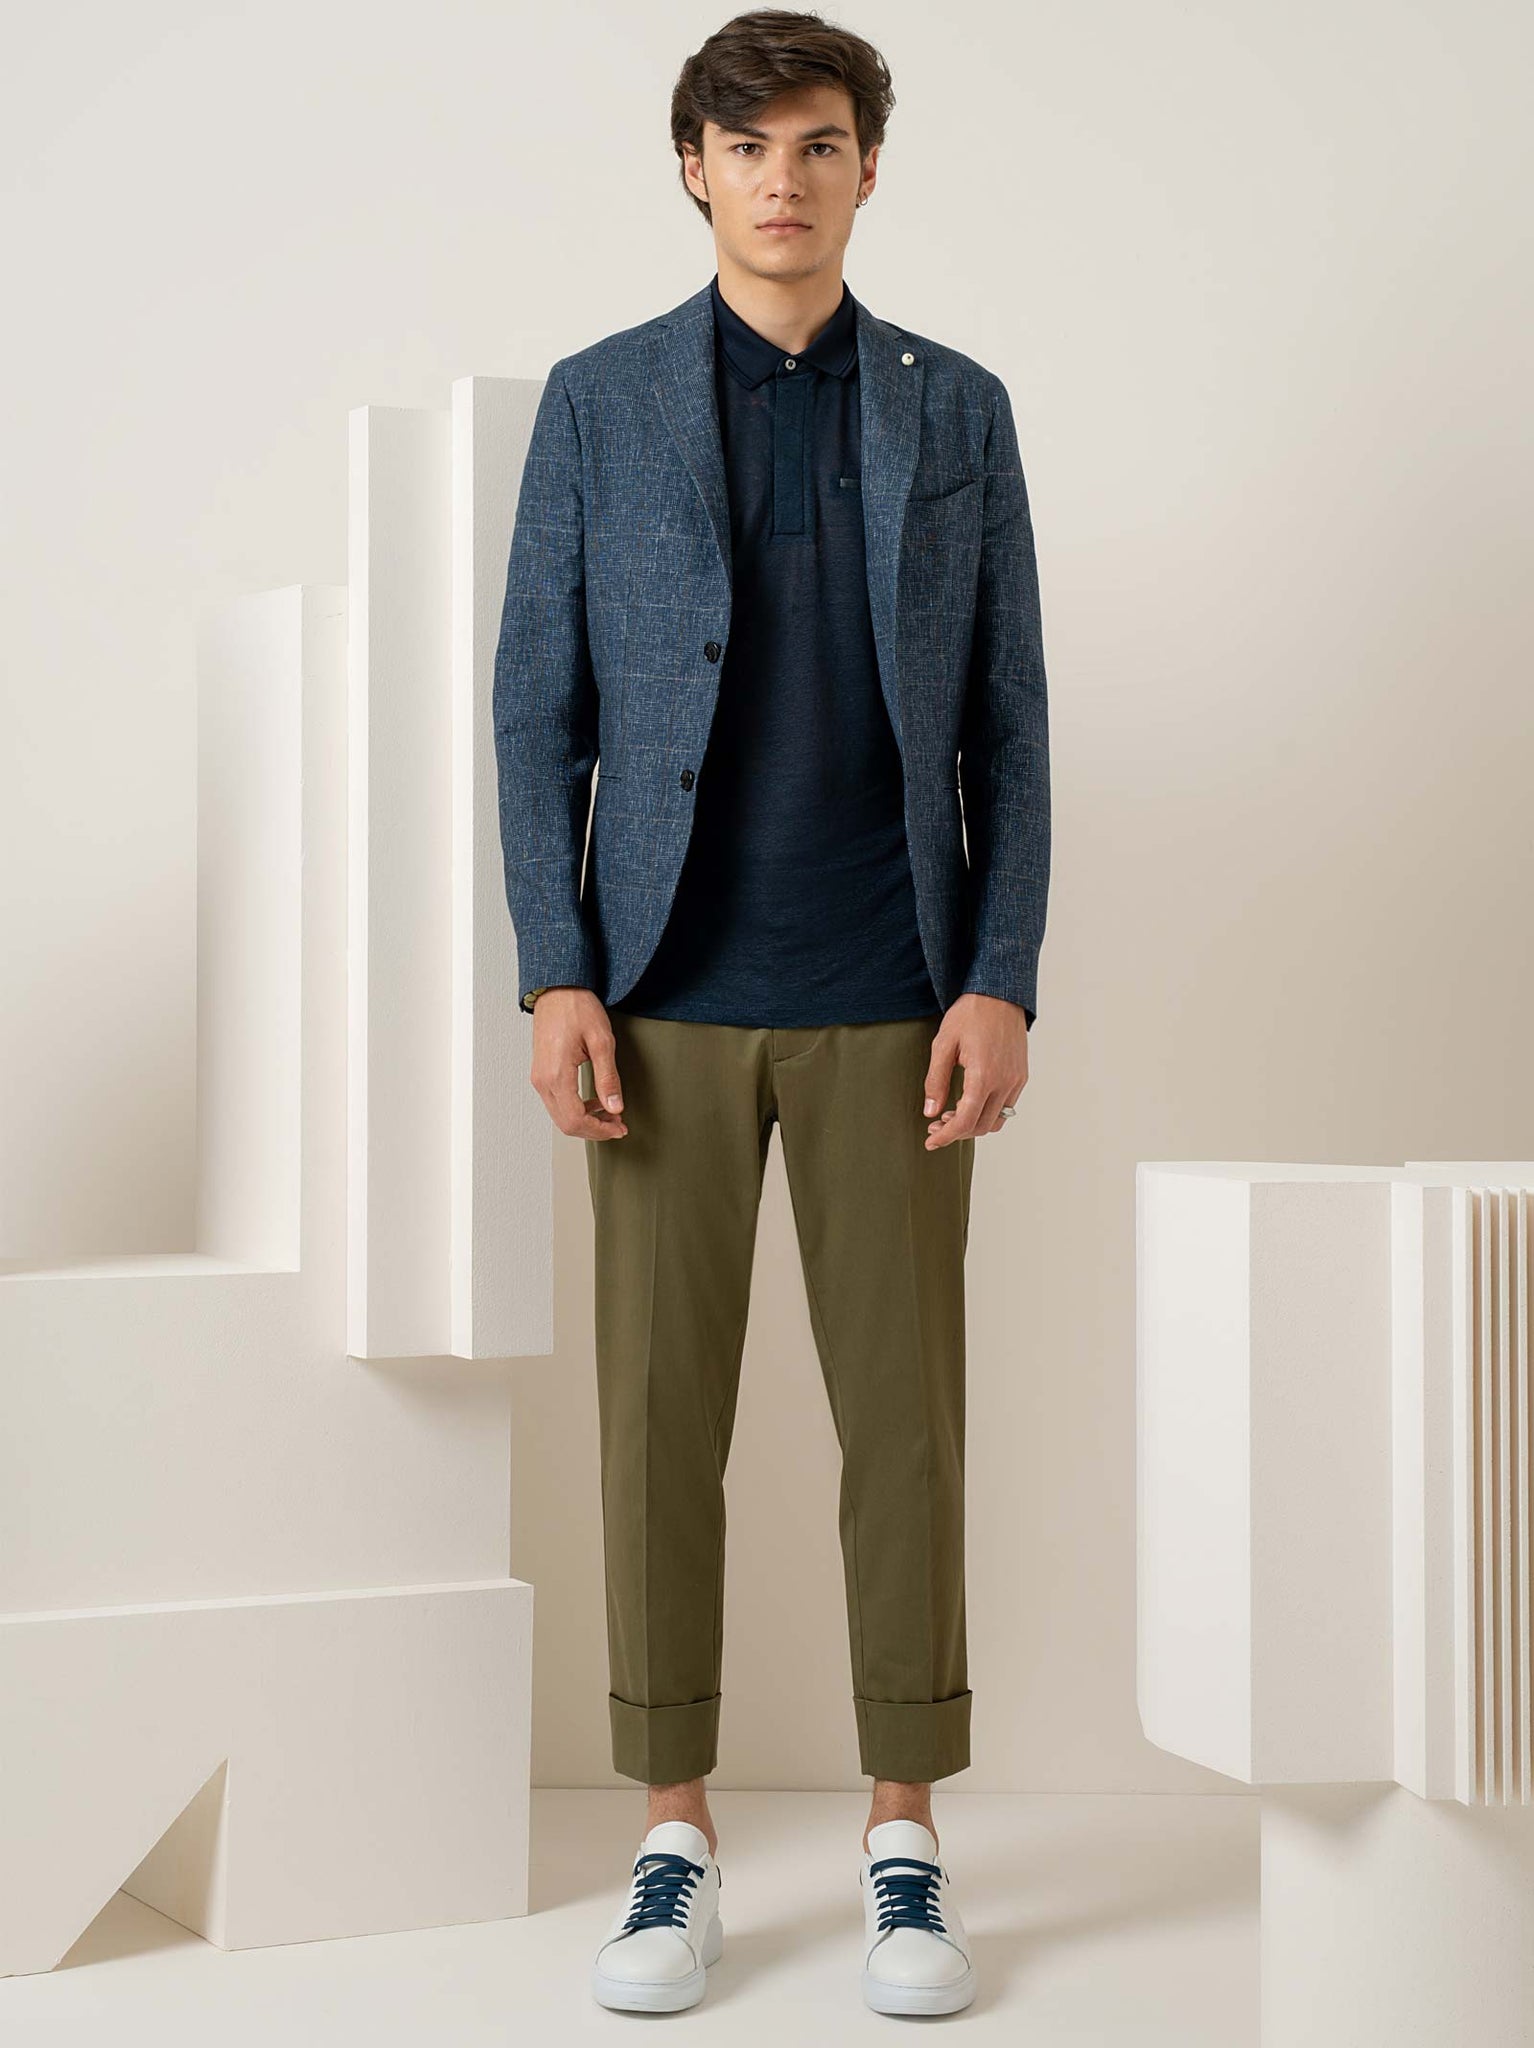 Pantaloni in cotone con risvolti, coulisse in vita e logo sul retro / Beige - Ideal Moda